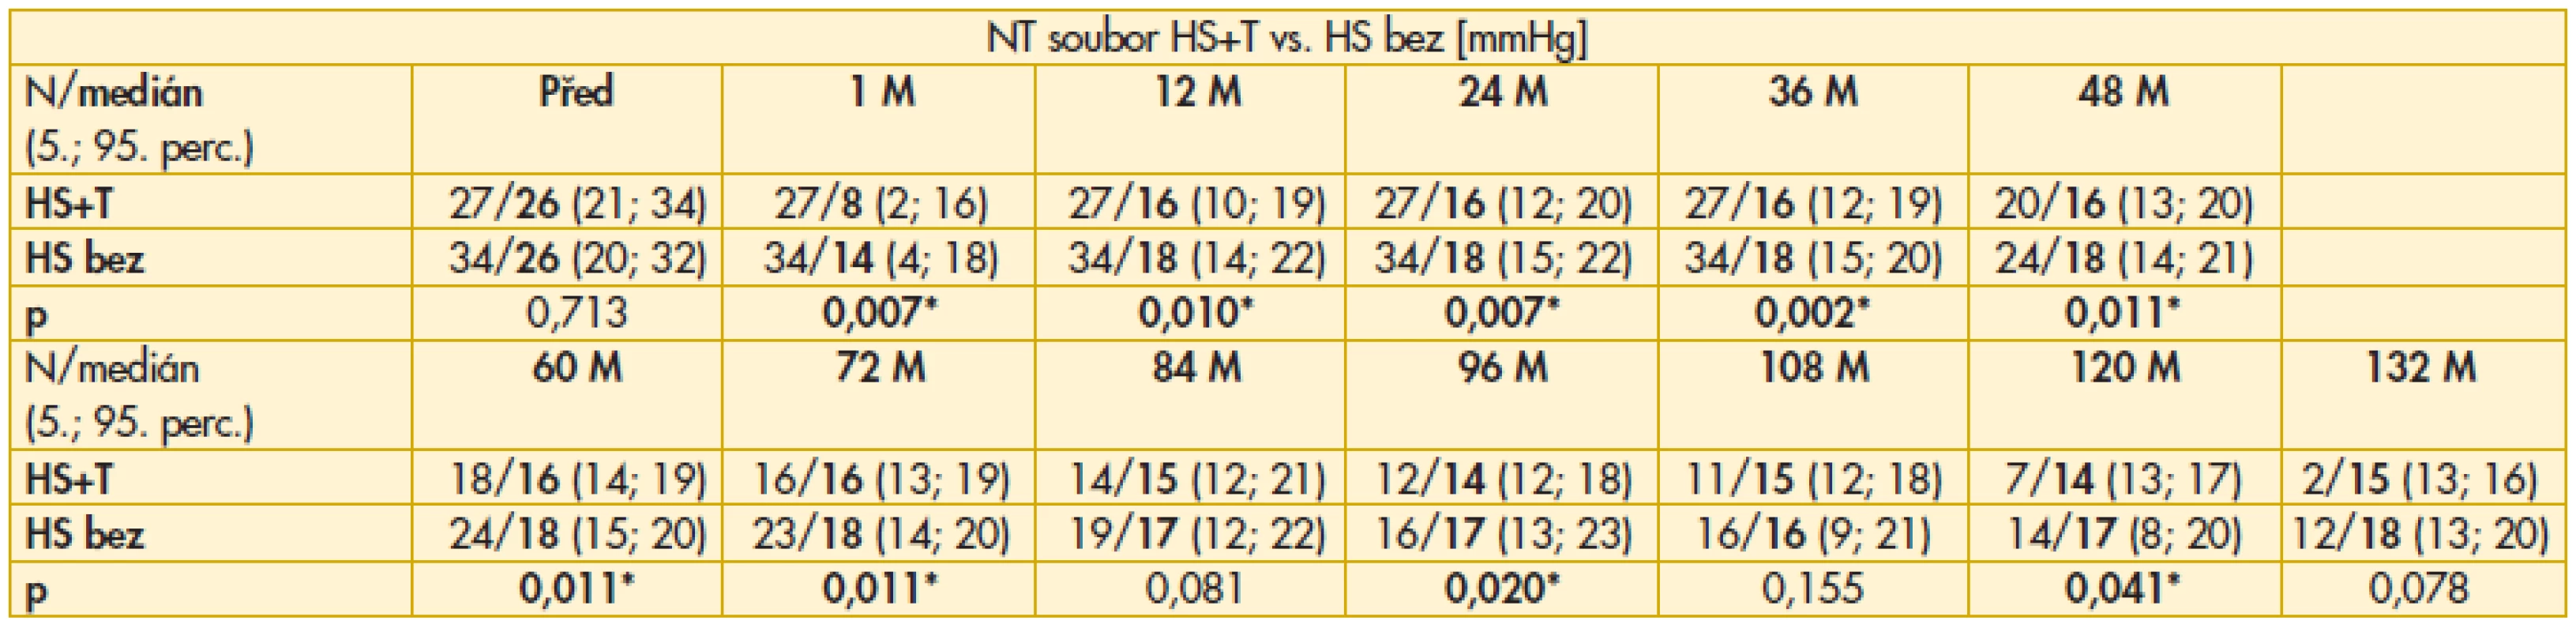 Výsledky srovnání hodnot NT mezi soubory HS+T vs. HS bez před a po operaci